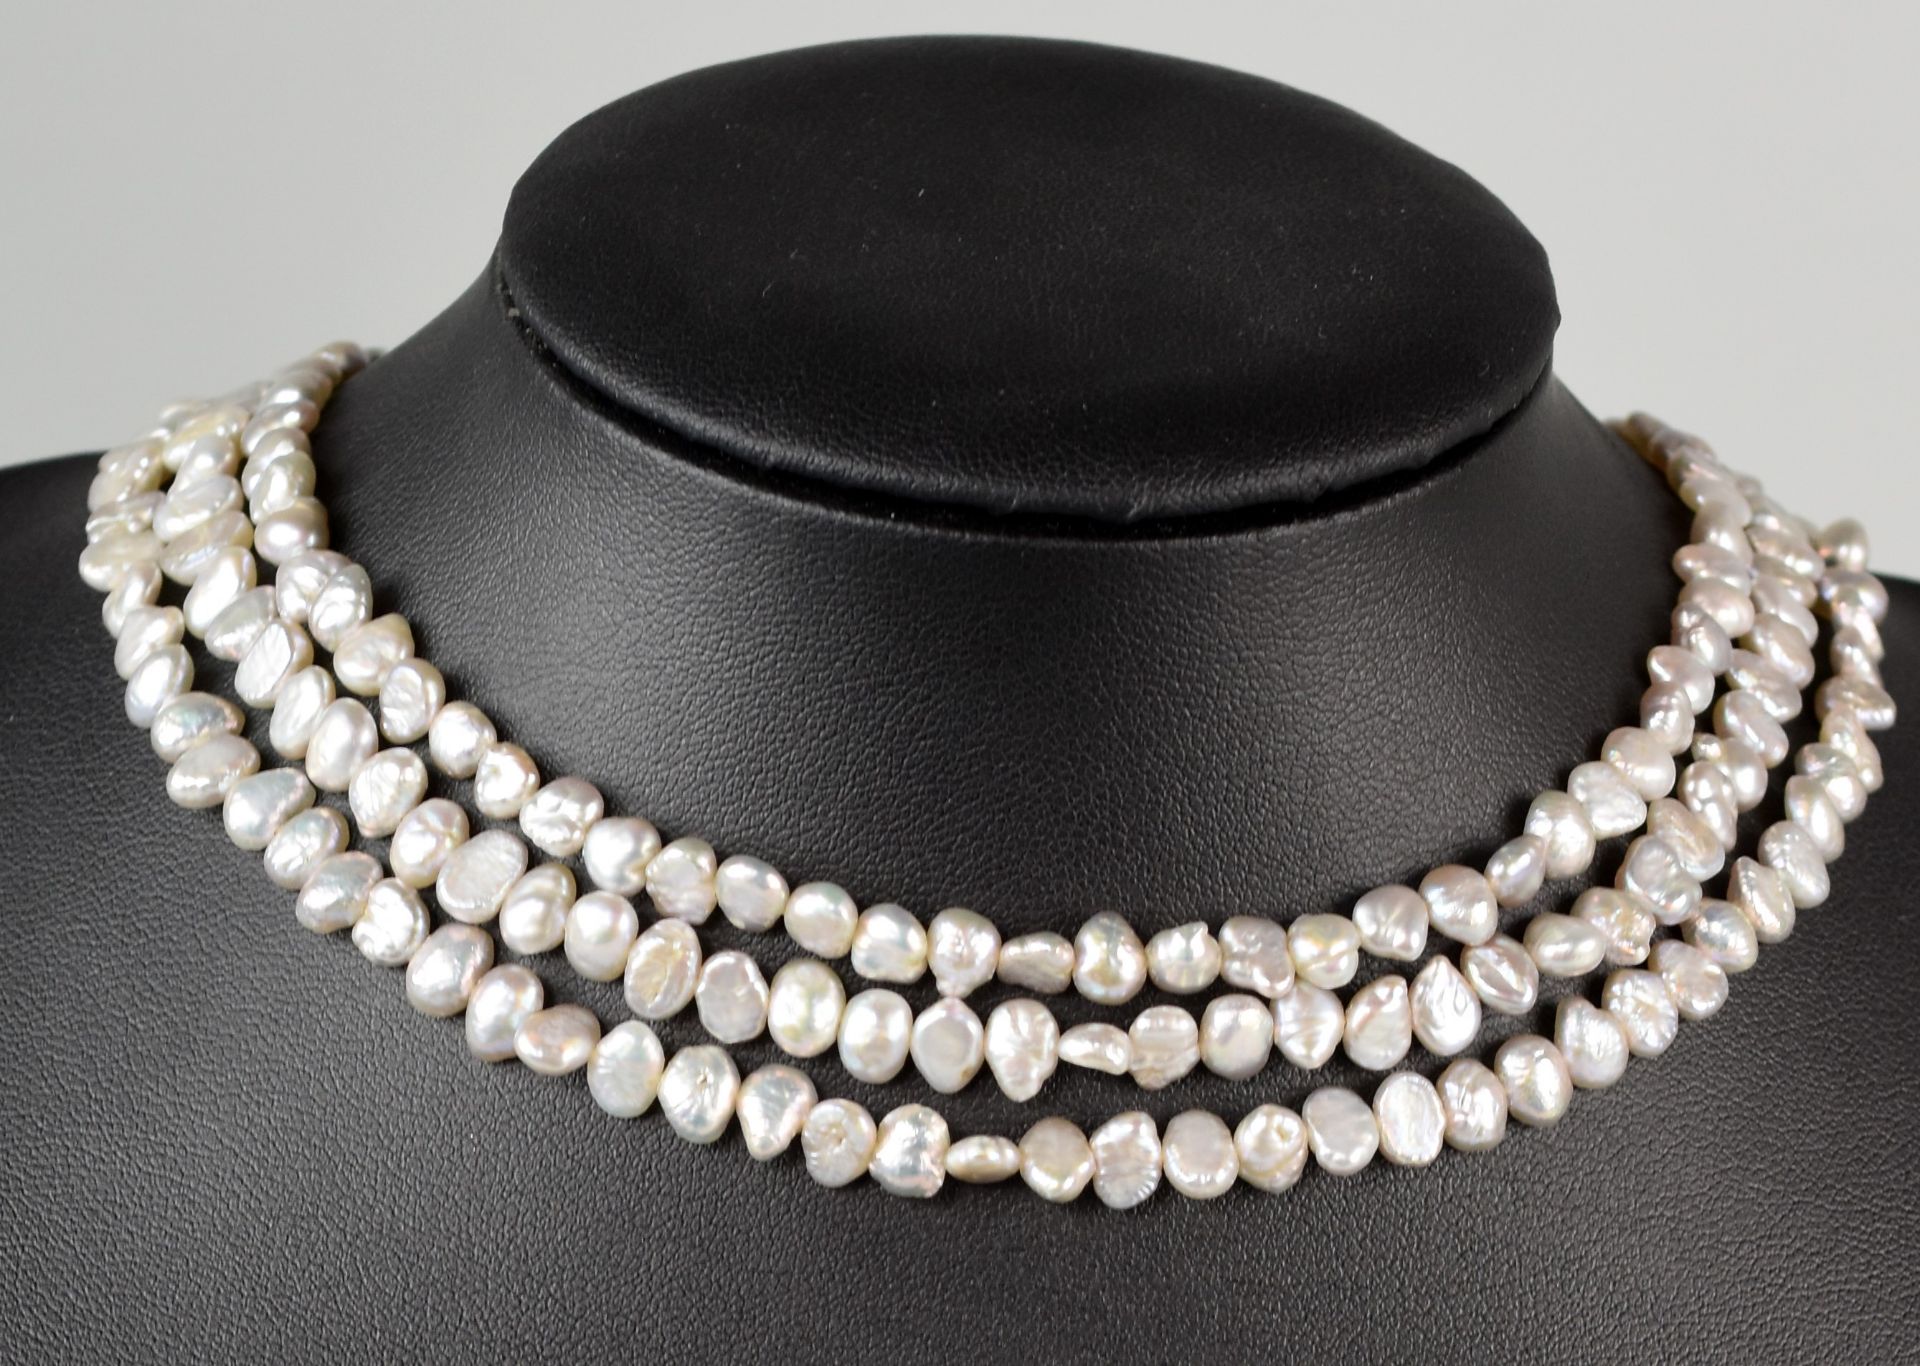 BIWAPERLEN-COLLIER dreireihig, gleichmässig sortierte graue Perlen mit Weißgoldverschluß 14ct,